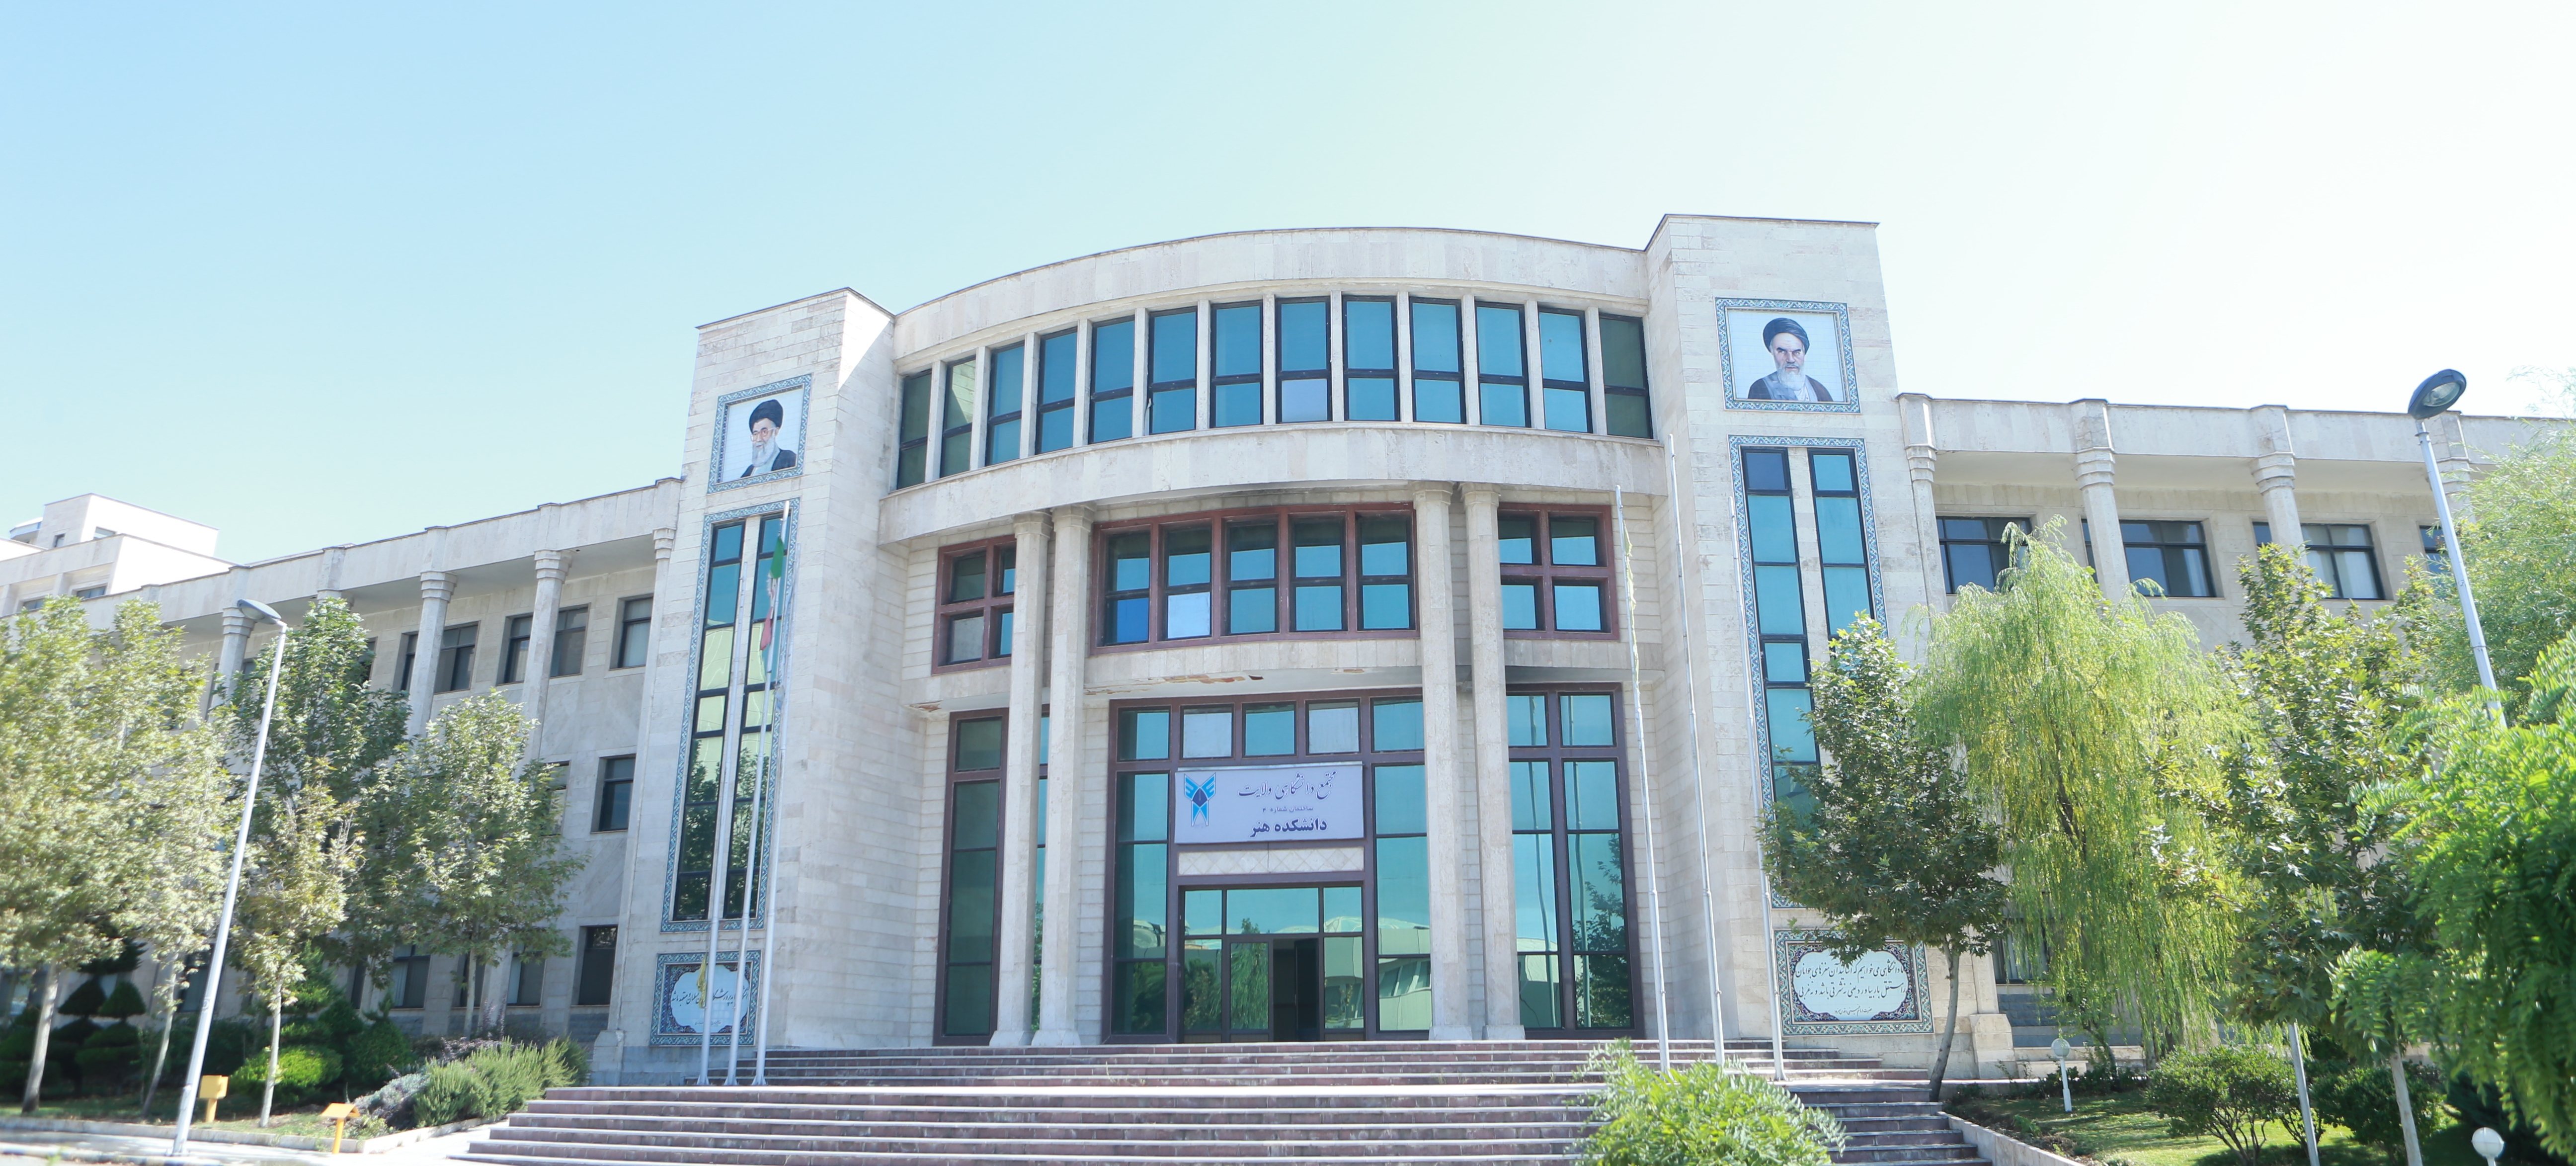 دانشگاه روانشناسی تهران مرکزی
